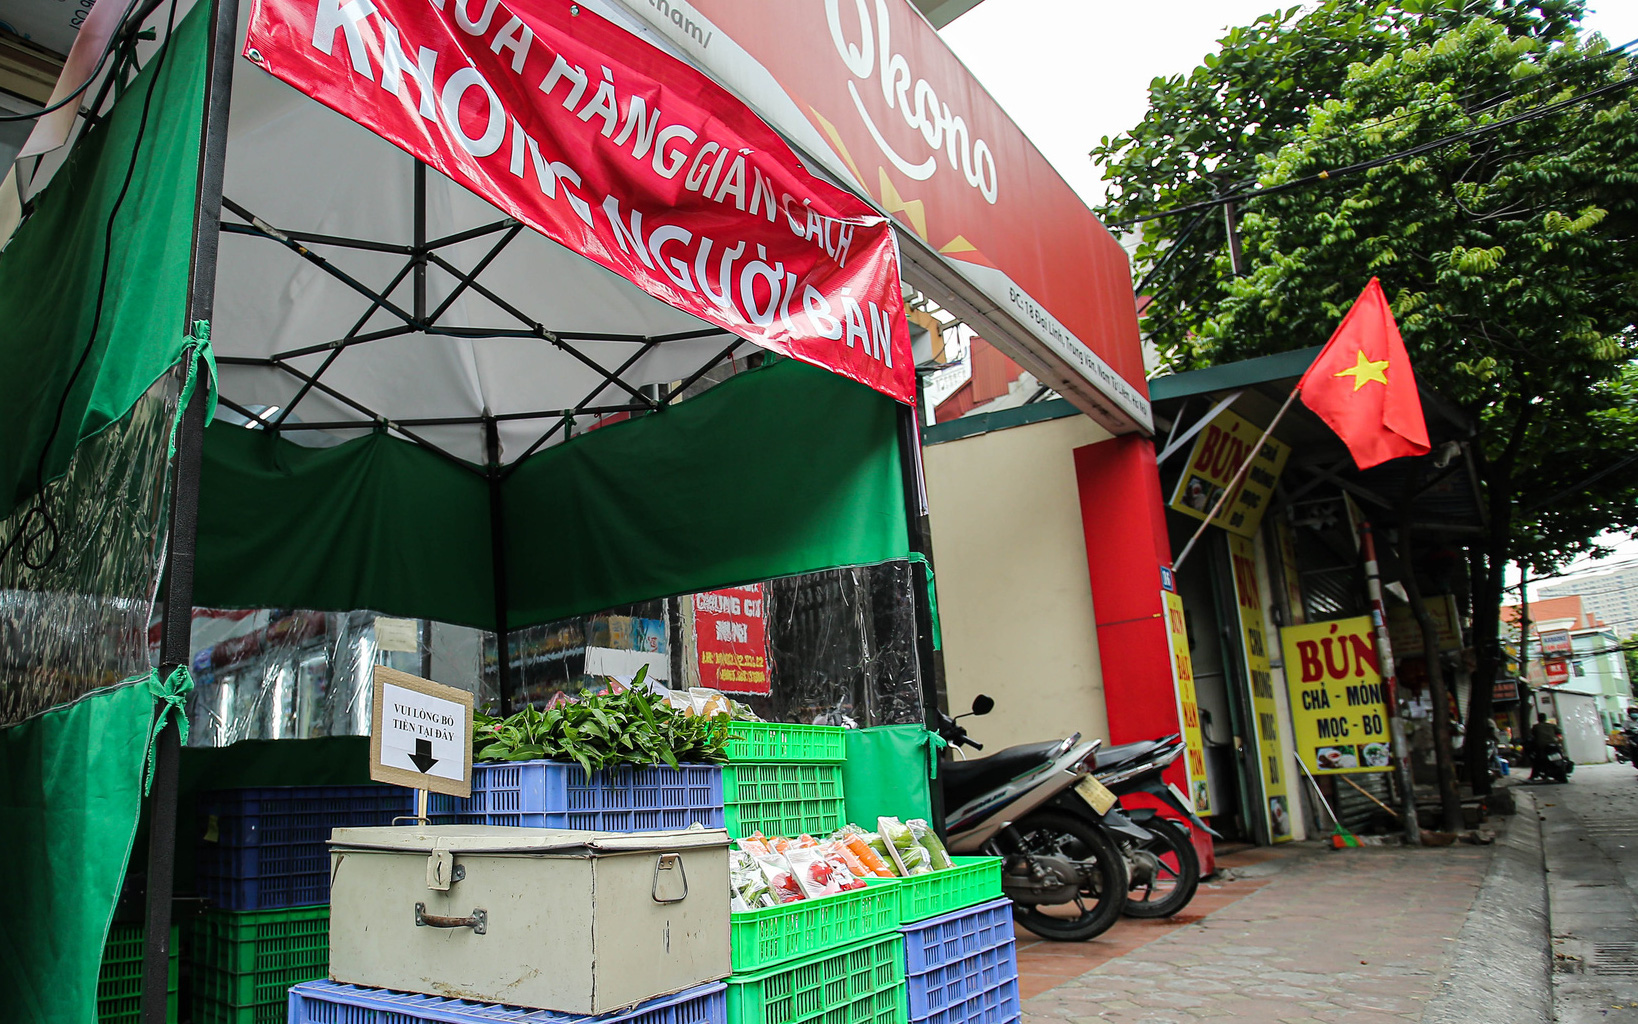 Hà Nội: Độc đáo chuỗi cửa hàng không người bán, người mua có thể nợ và đến trả sau